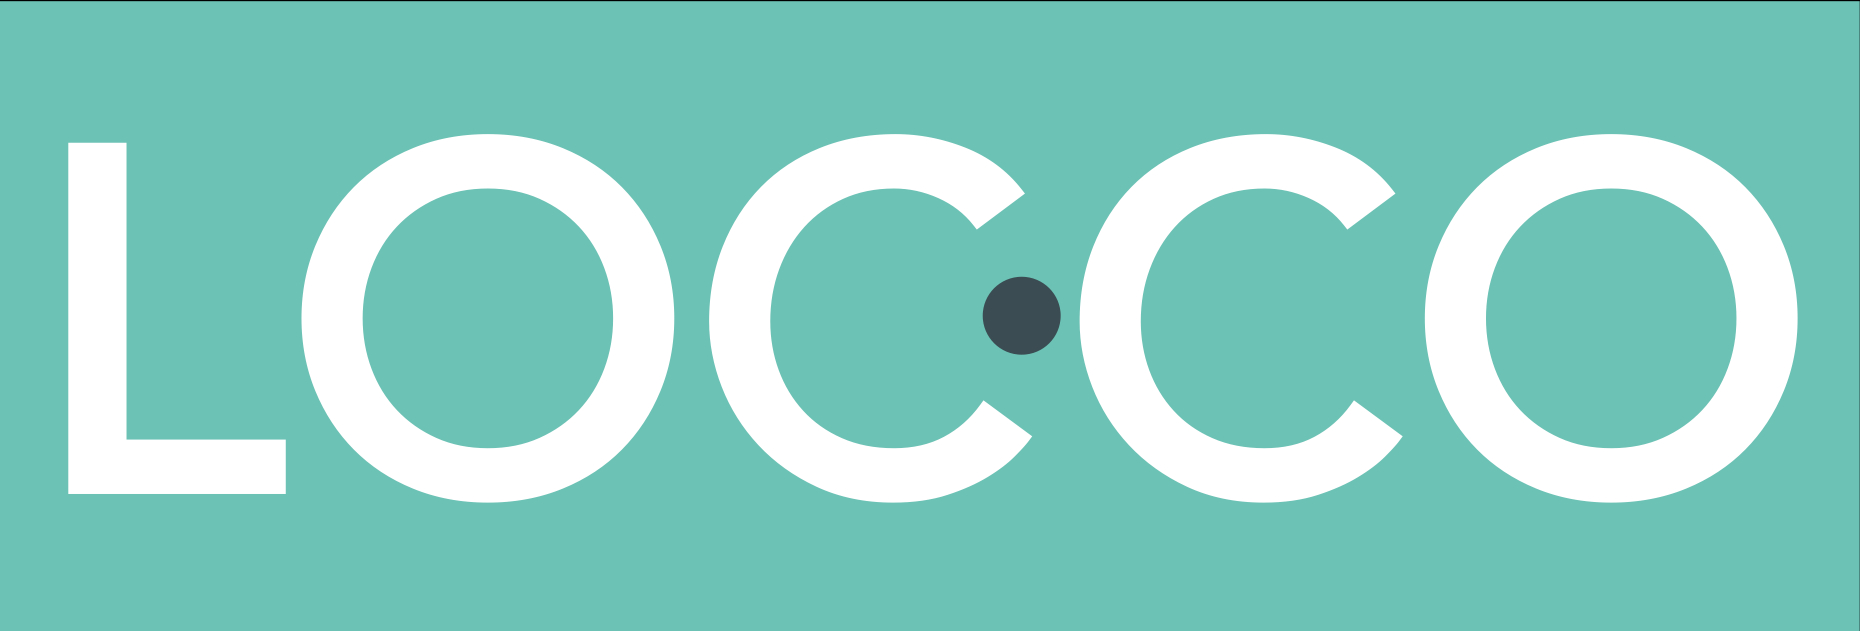 LOCCO / Local Companion GmbH